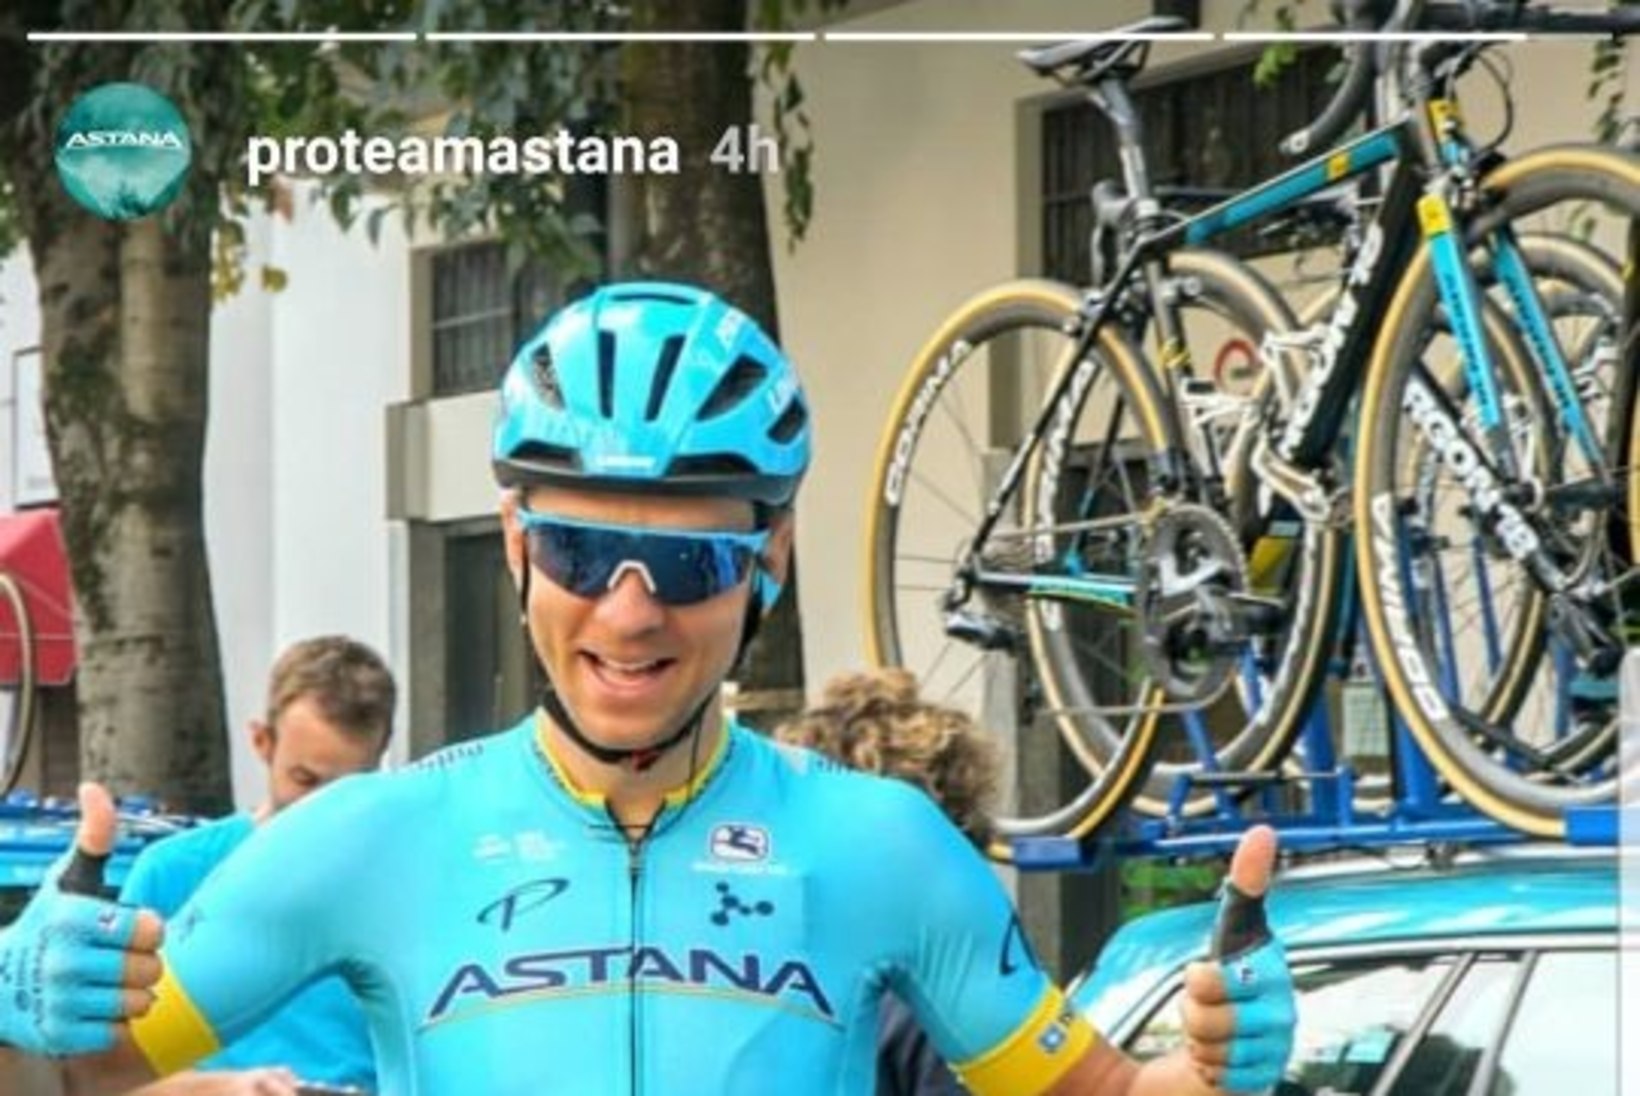 Kangert lõpetas Astana-karjääri katkestamisega